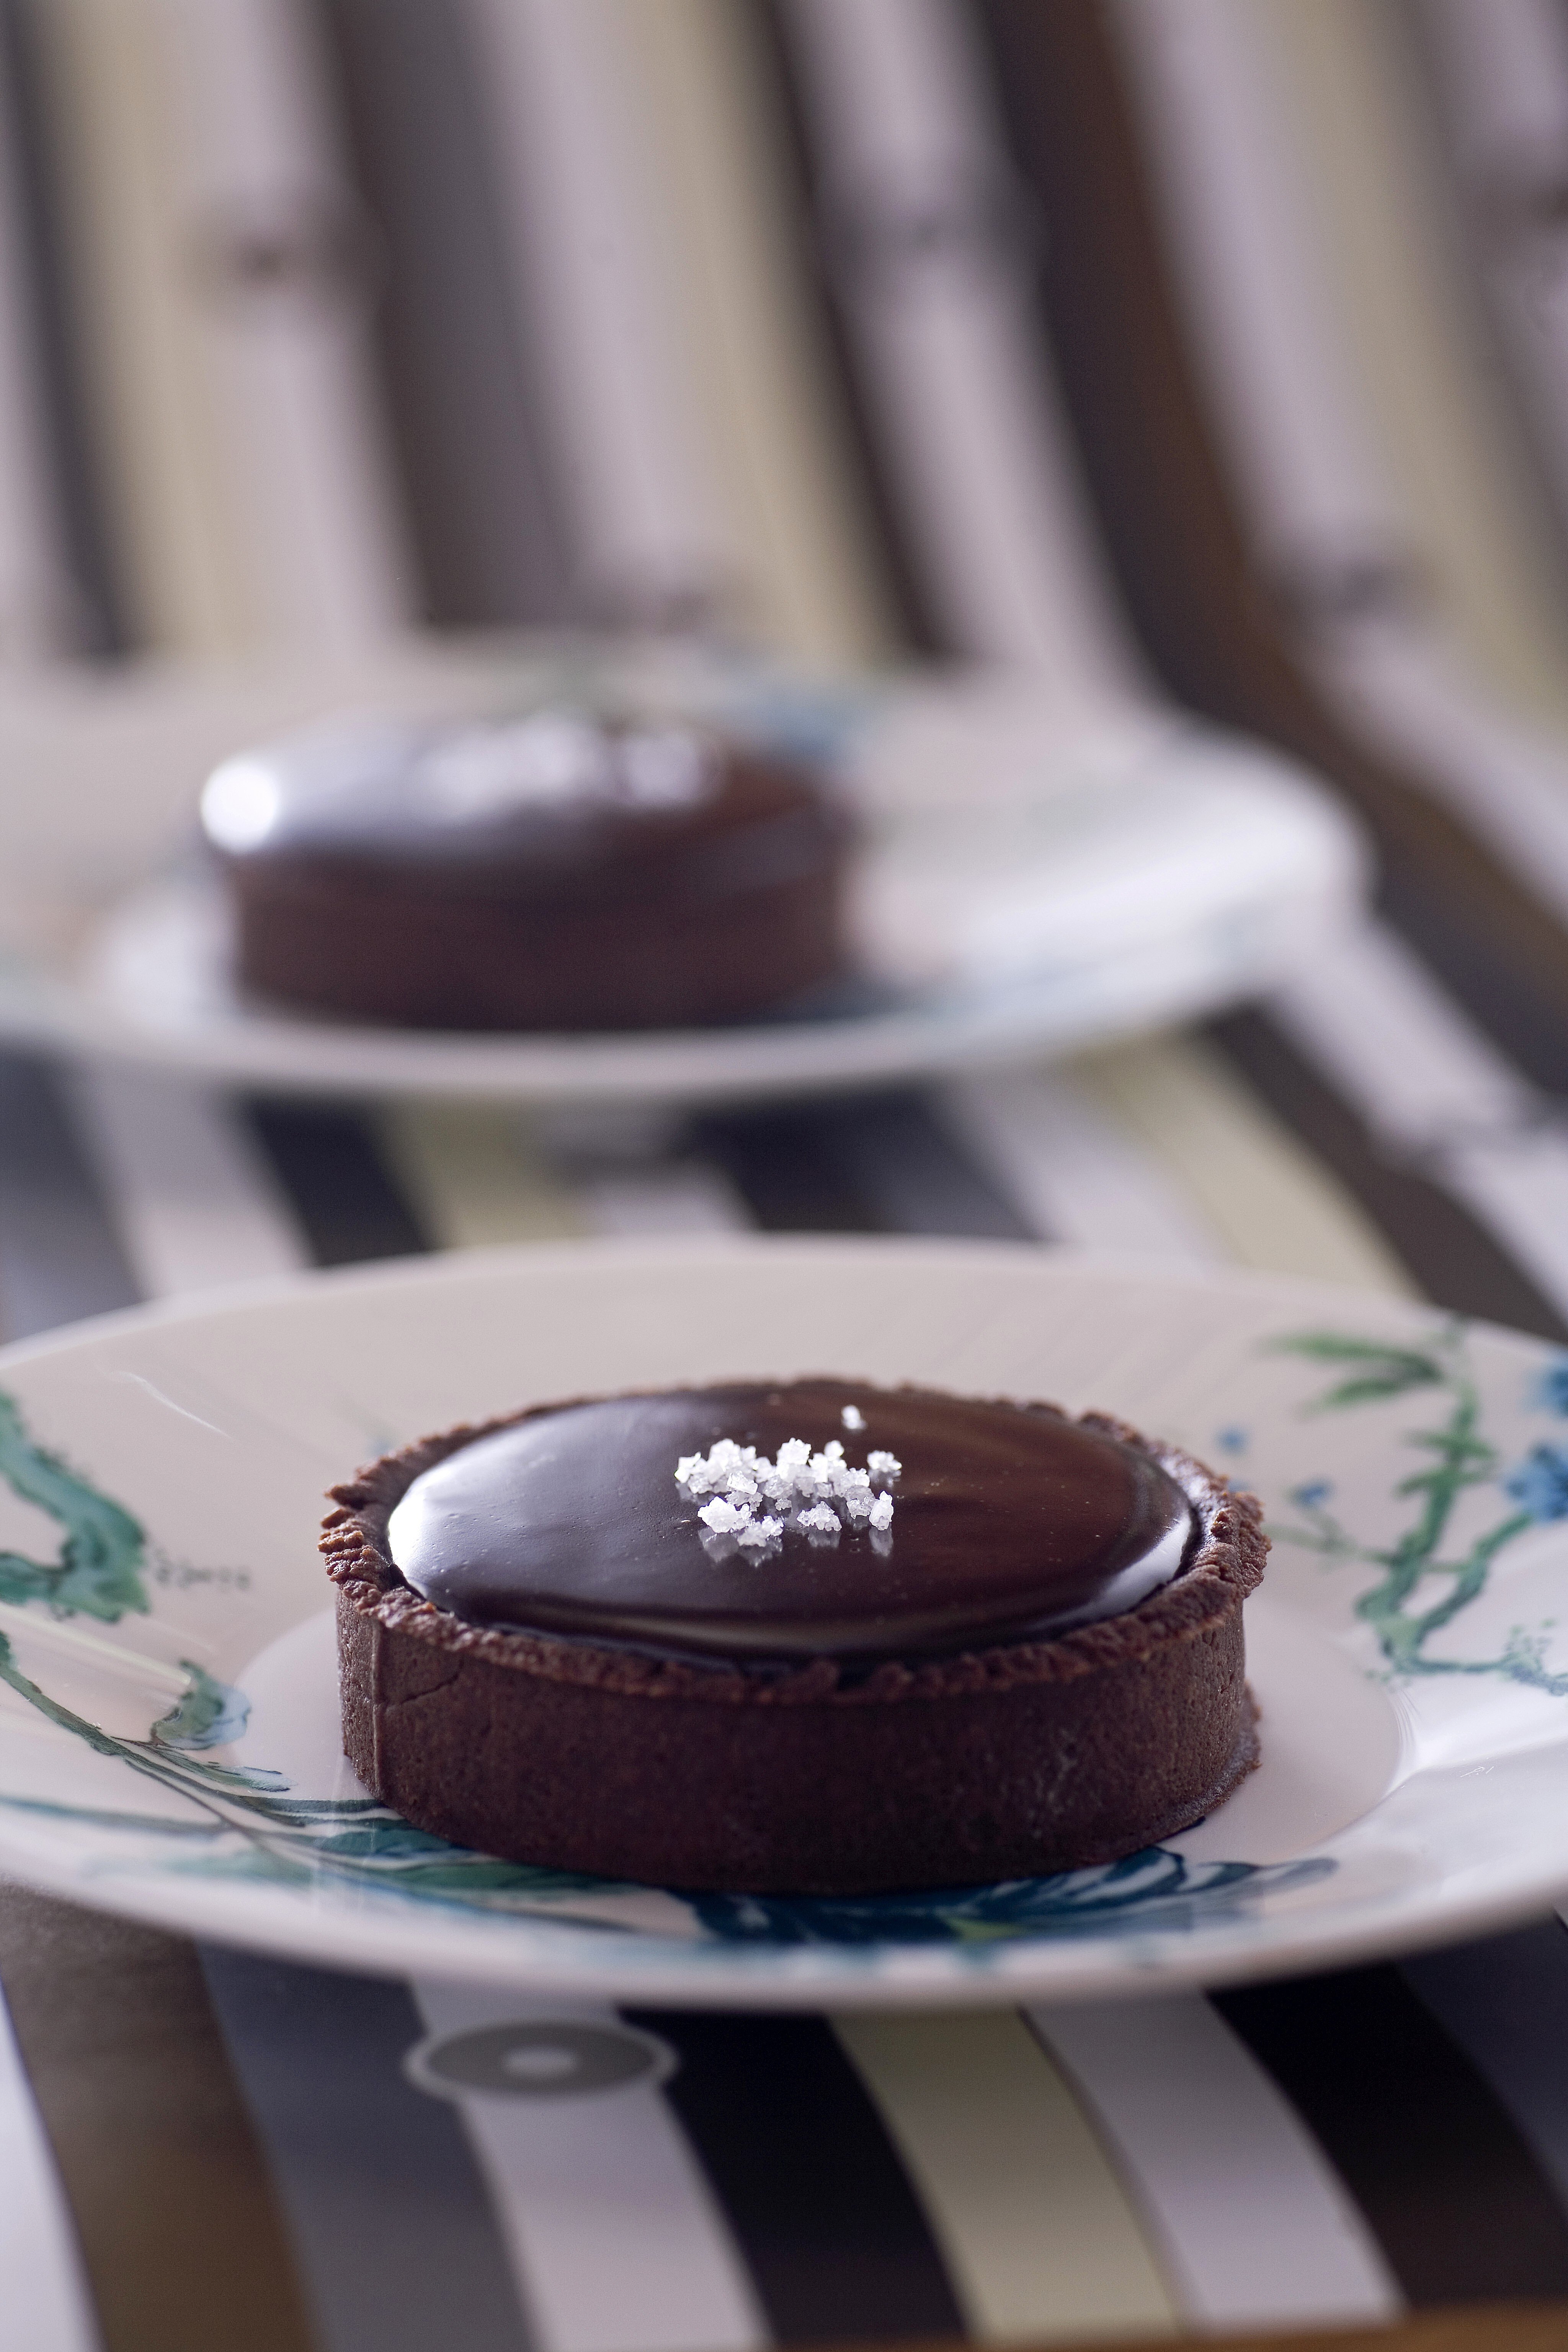 Susan Jung’s chocolate and salted caramel tart. Photography: Koji Studio. Styling: Vivian Herijanto